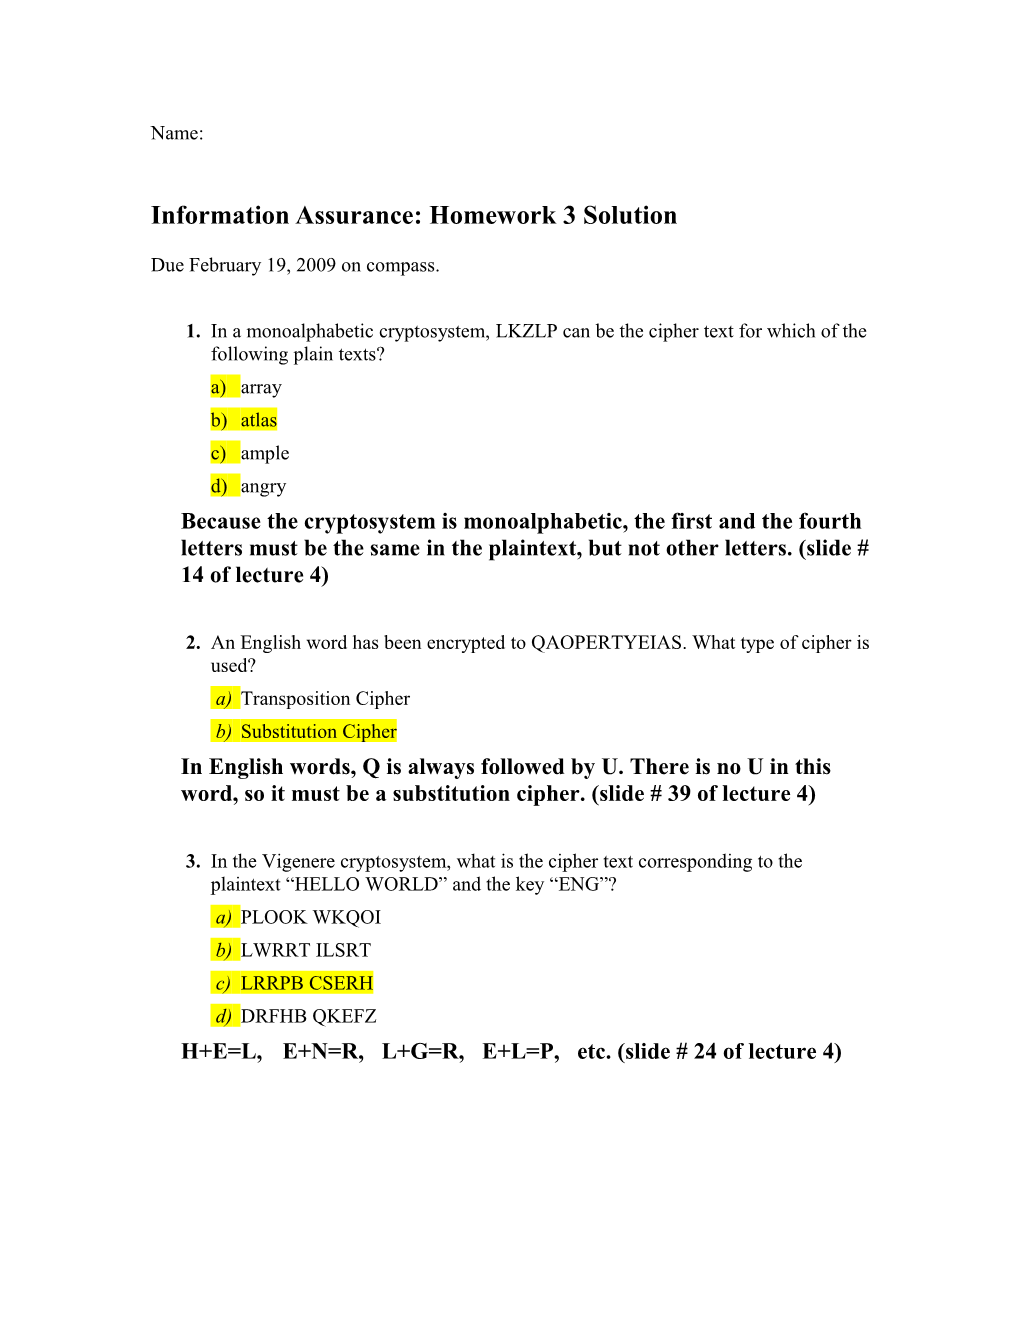 Information Assurance Homework 1